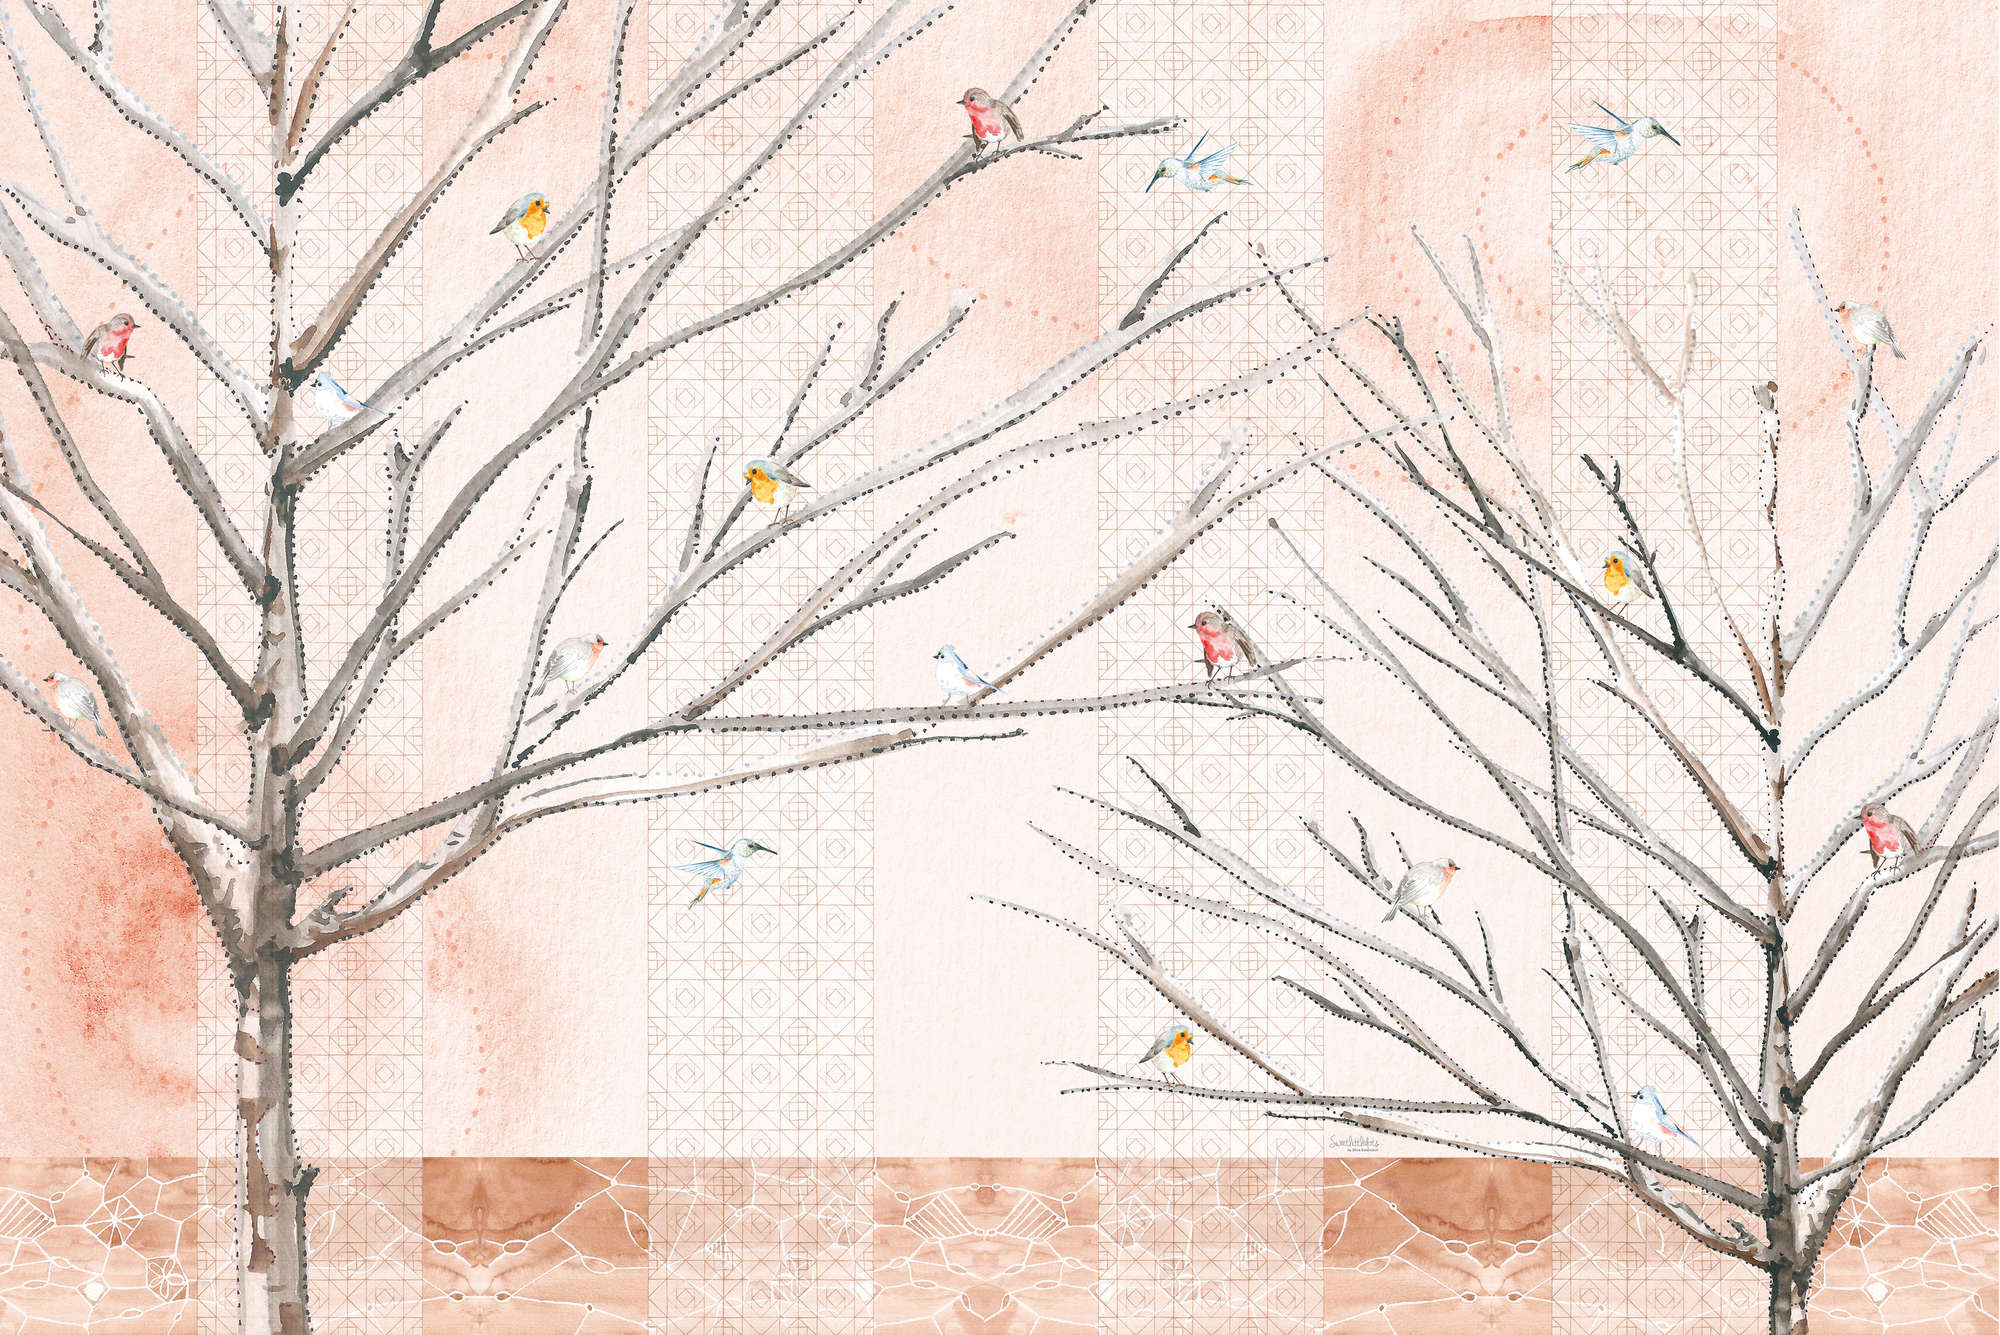             Artistiek Behang Bomen met Vogels in Beige en Bruin op Pearl Smooth Nonwoven
        